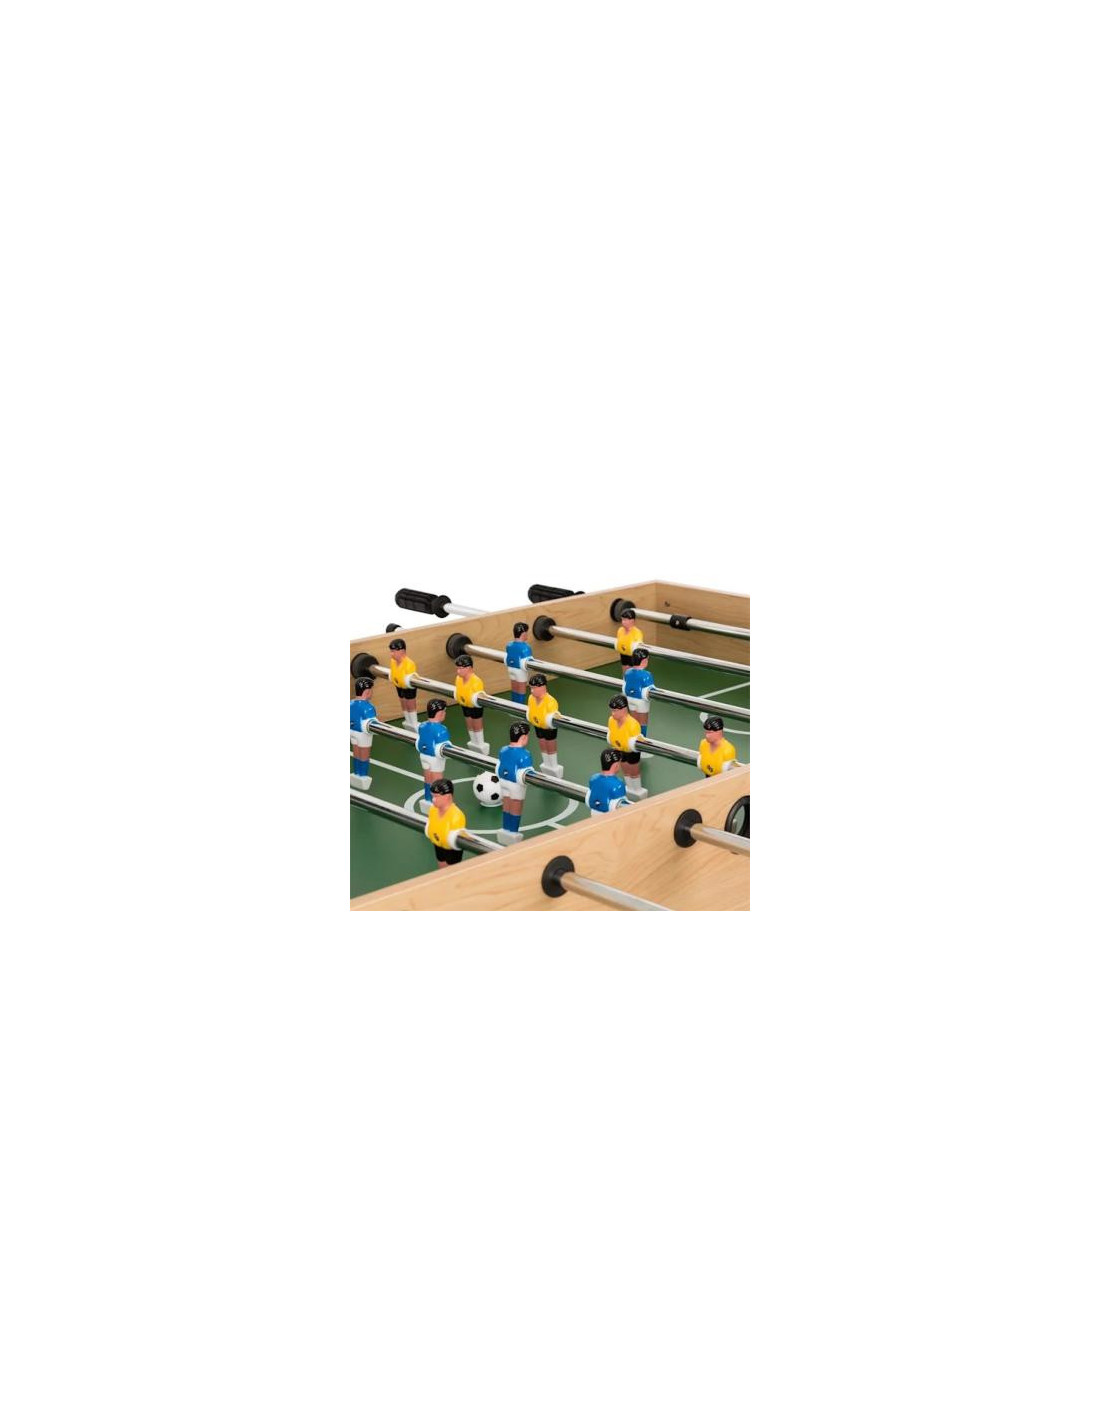 Table de jeux 10 en 1 - Baby Foot - Billard - Ping Pong - Hockey - Bowling  - Cartes - Structure Bois - Accessoires Inclus